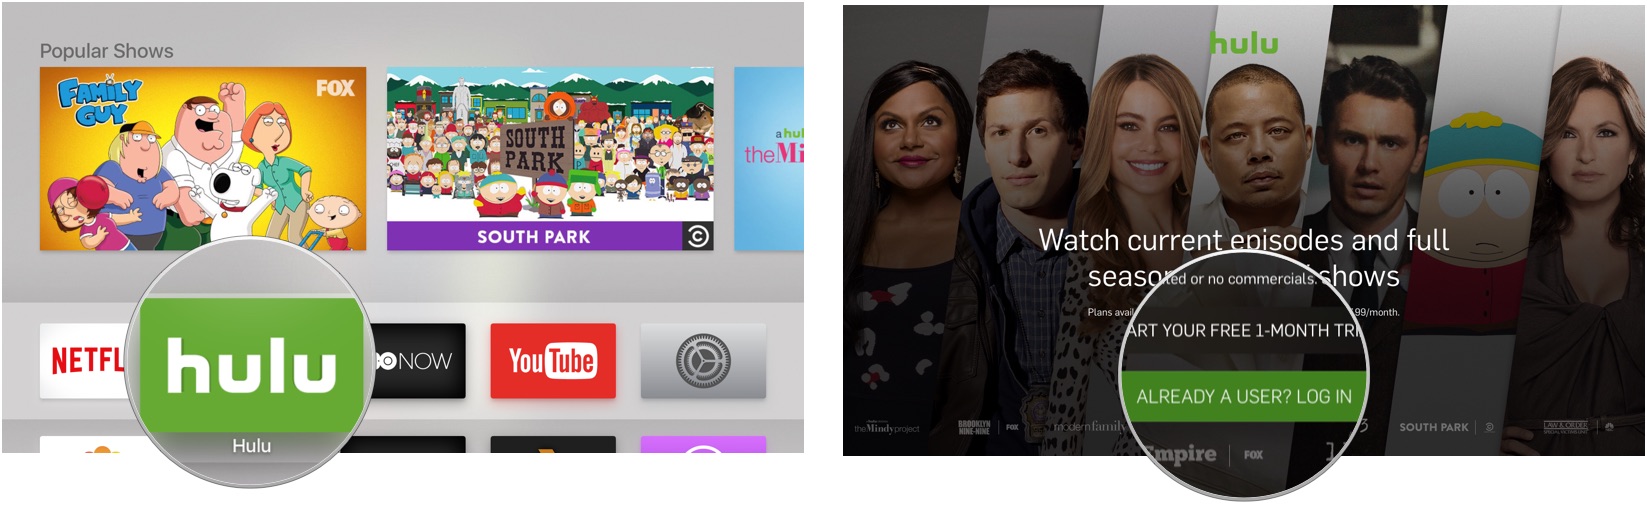 Opening Hulu on Apple TV